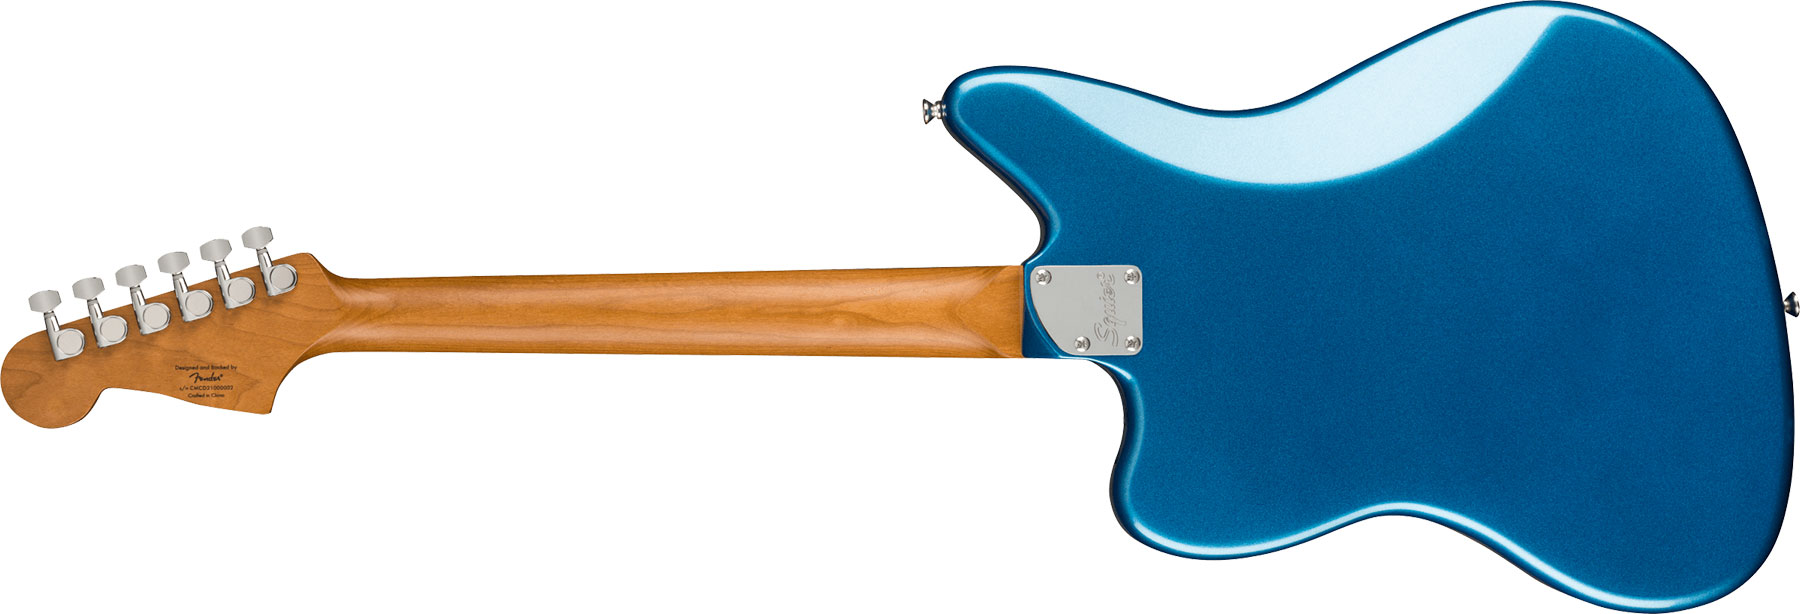 Squier Jaguar Contemporary Hh St Fsr Ltd Ht Lau - Lake Placid Blue - Guitarra electrica retro rock - Variation 1